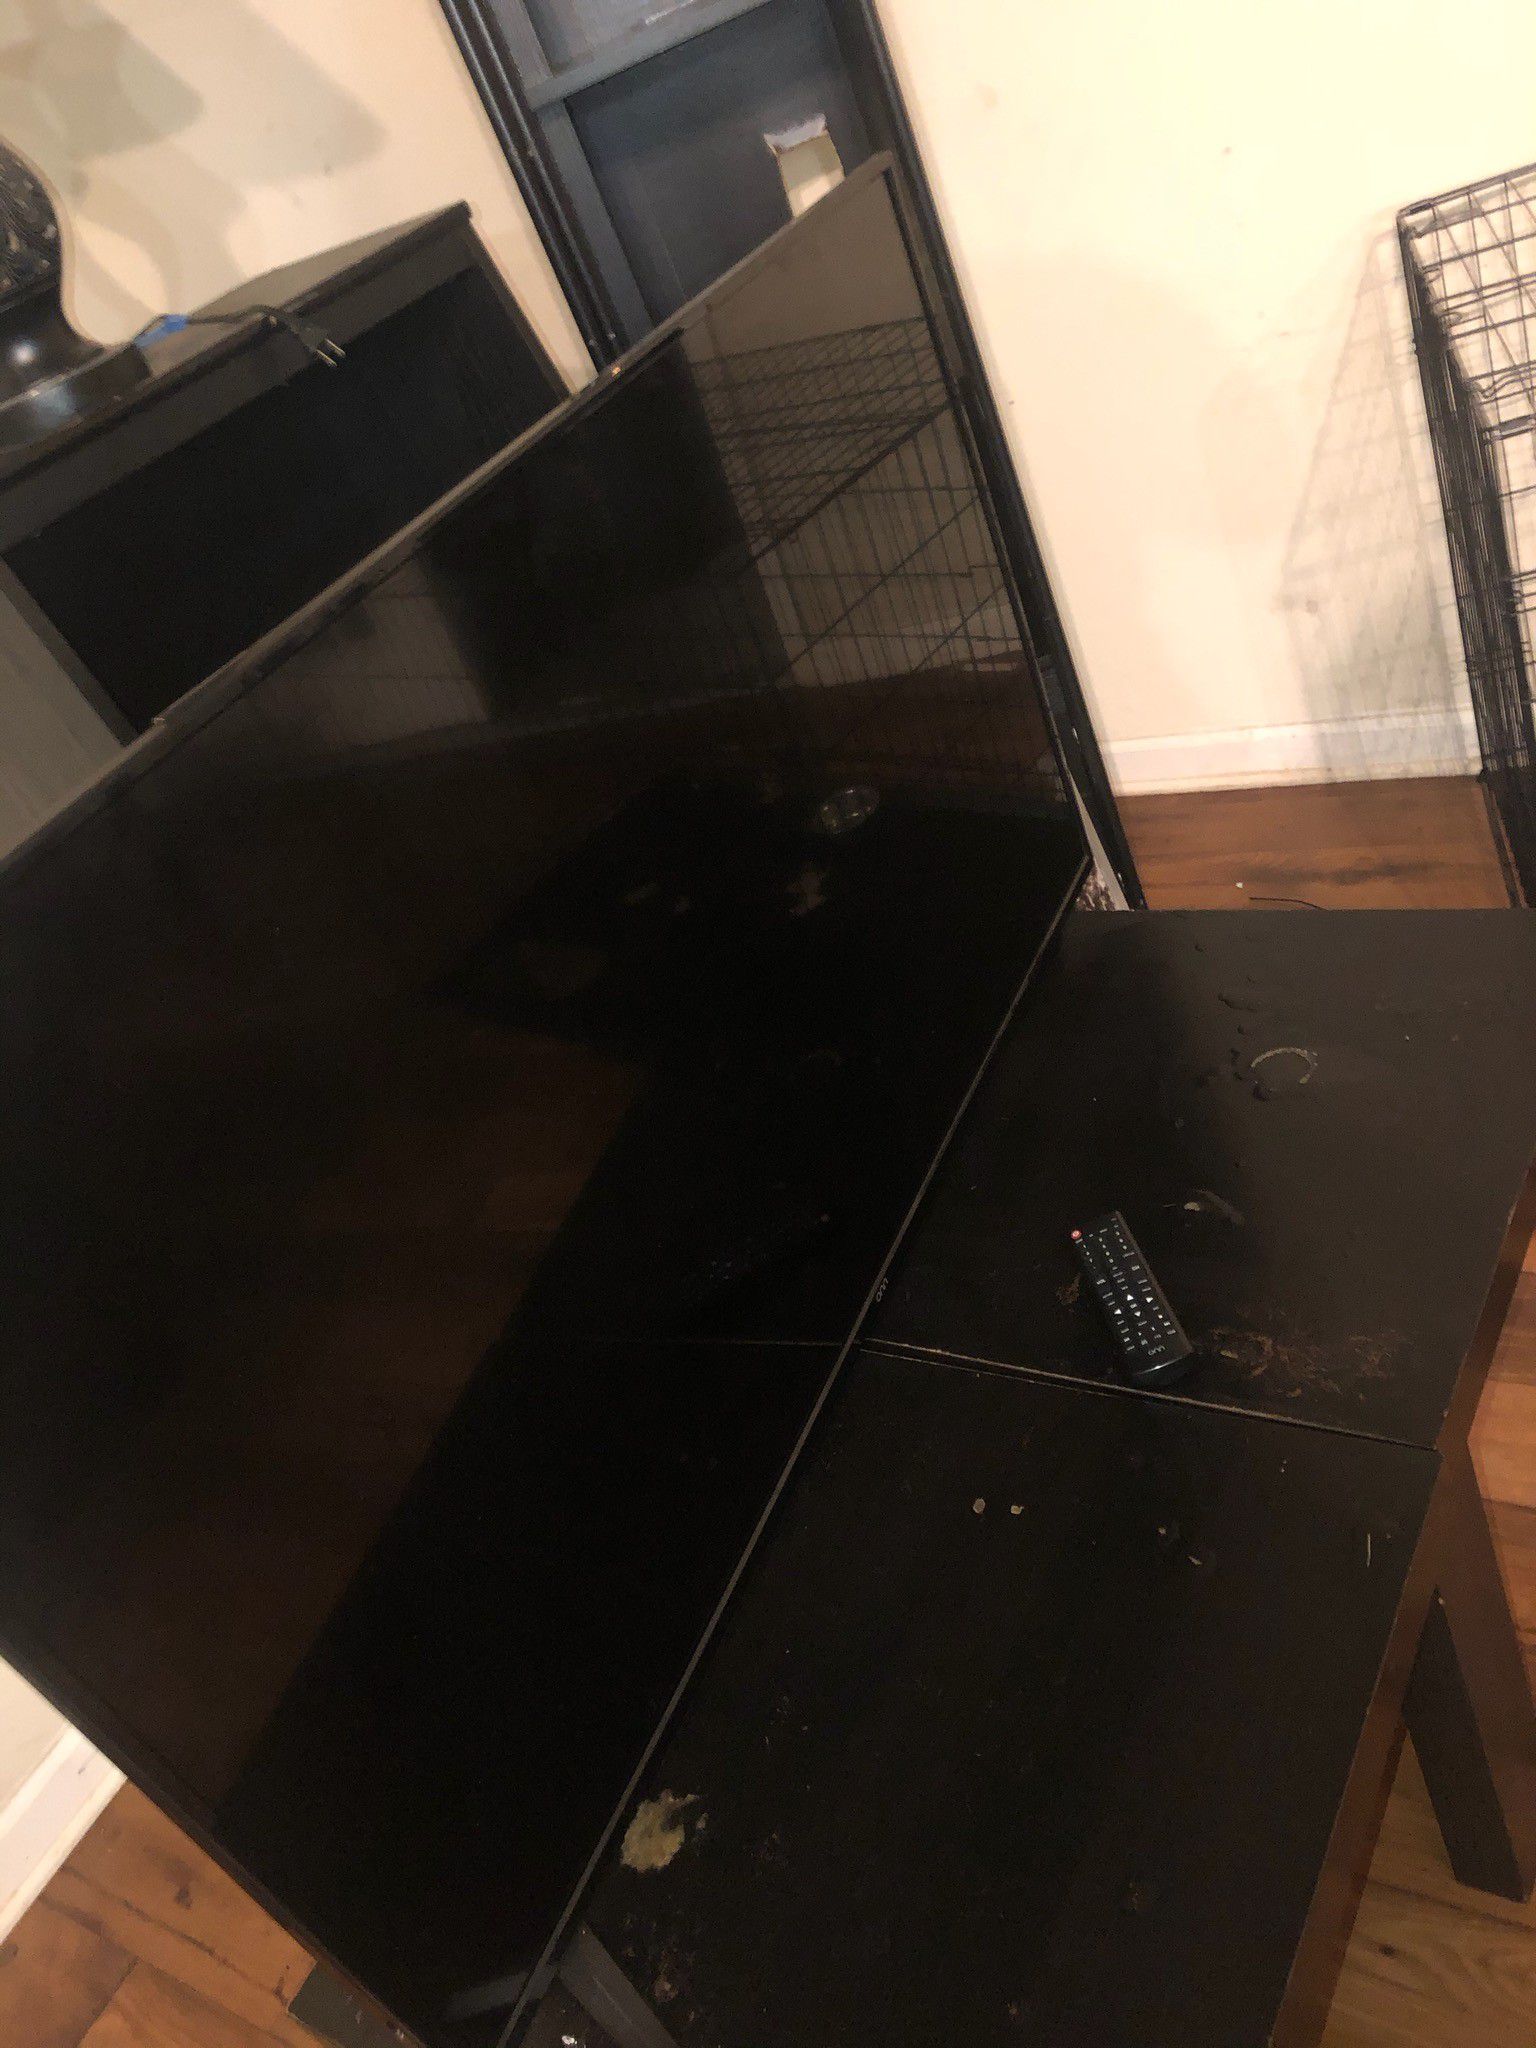 50 inch tv flat screen by ONN